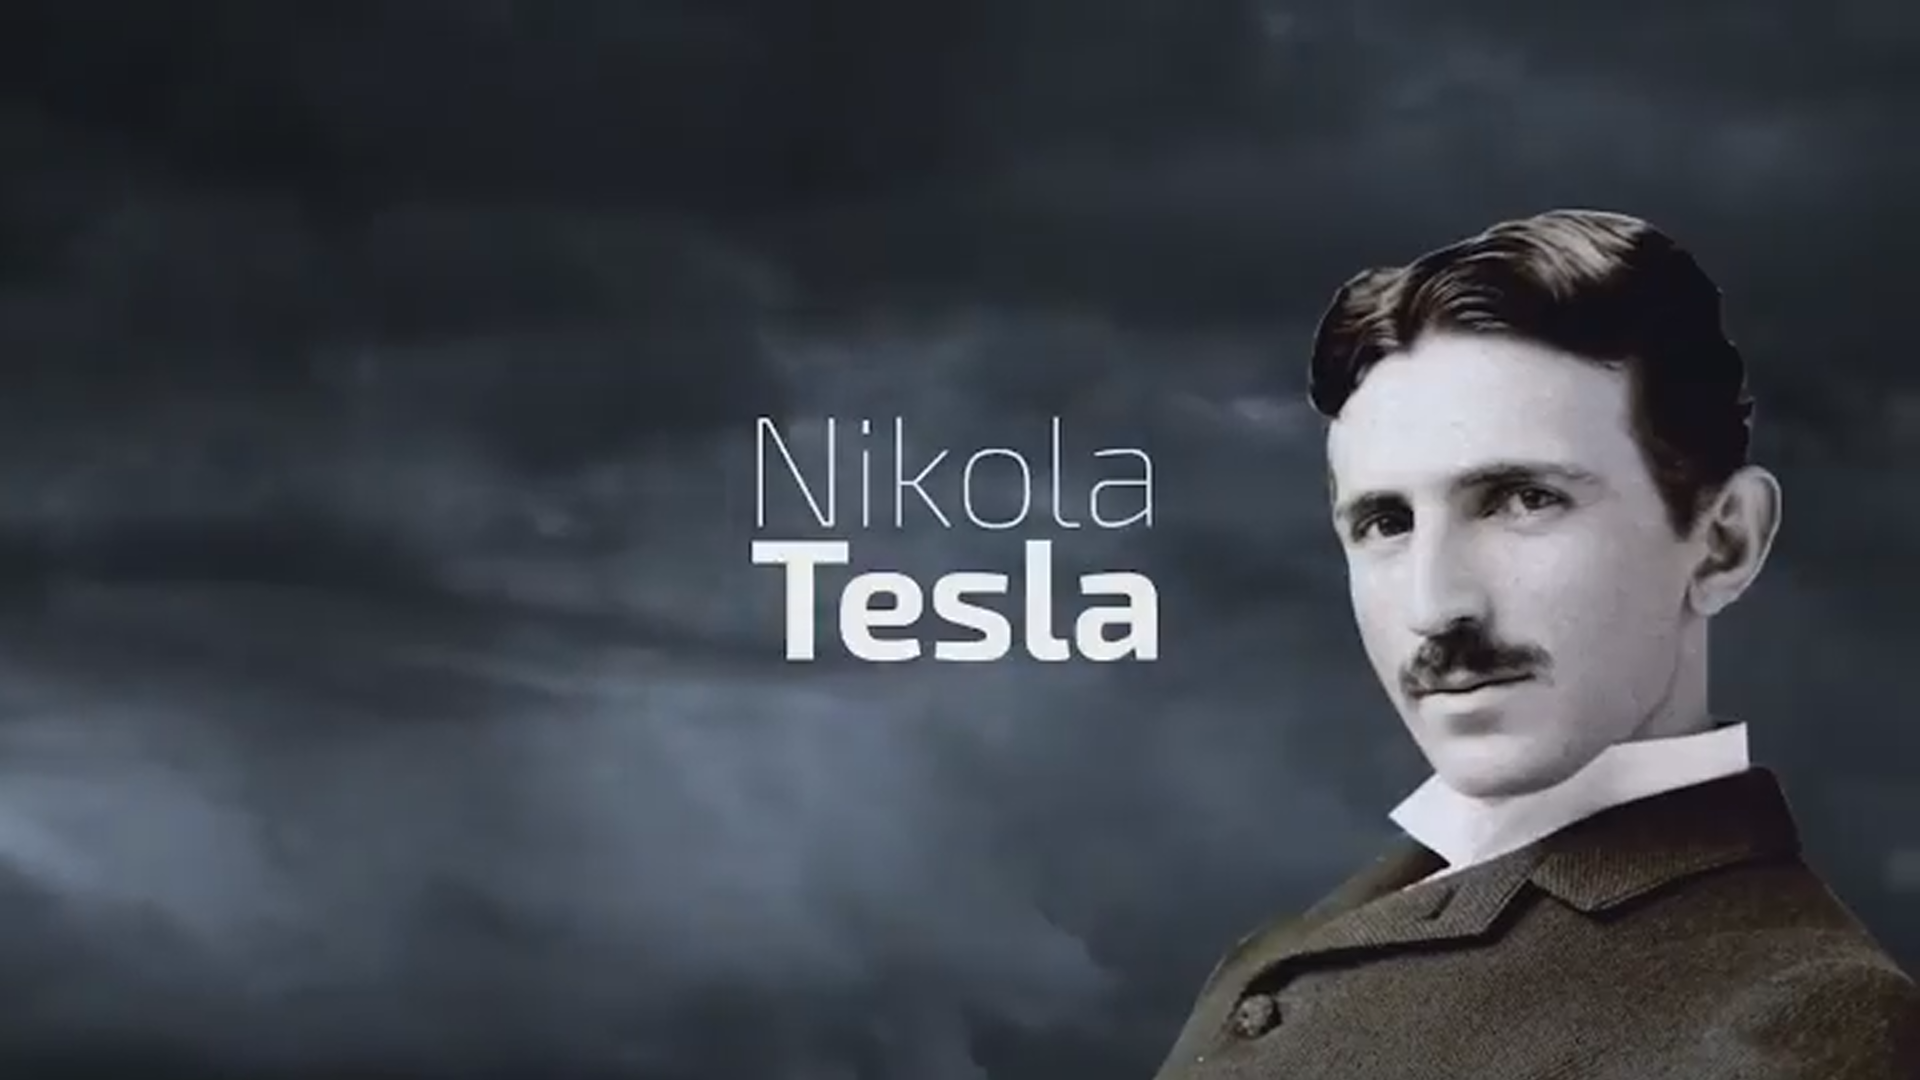 Никола Тесла обои - картинки, фото и рисунки.